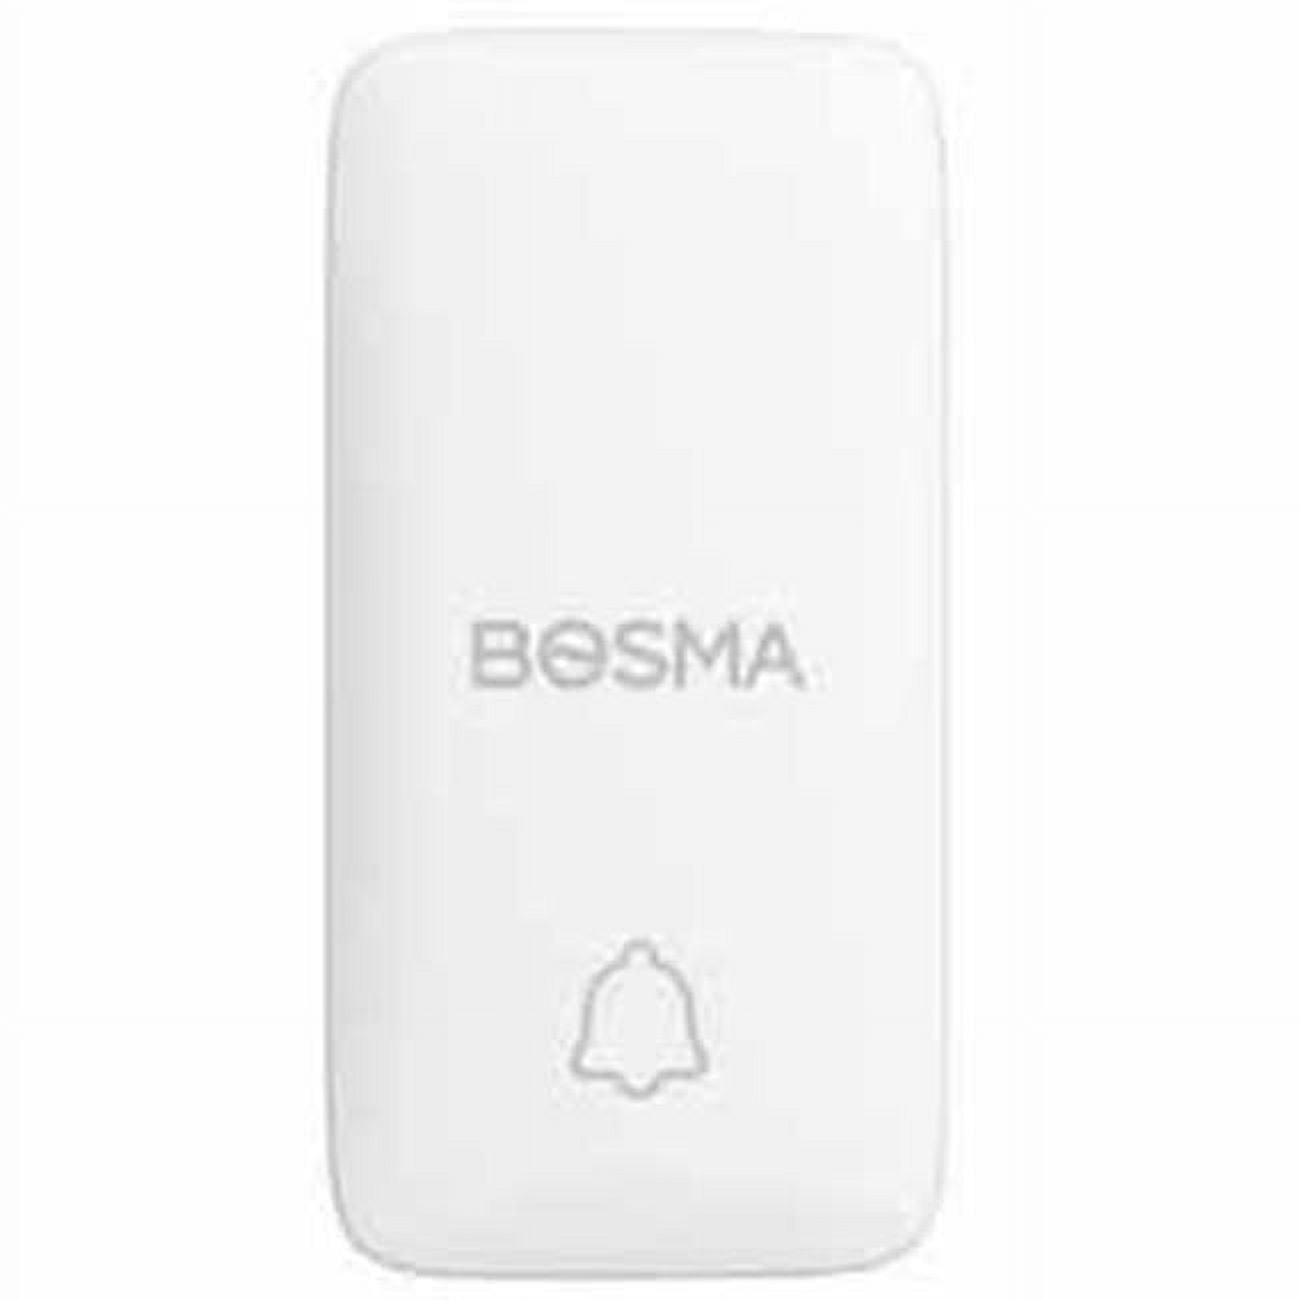 Picture of Bosma 1SB-US Smart Button&#44; White